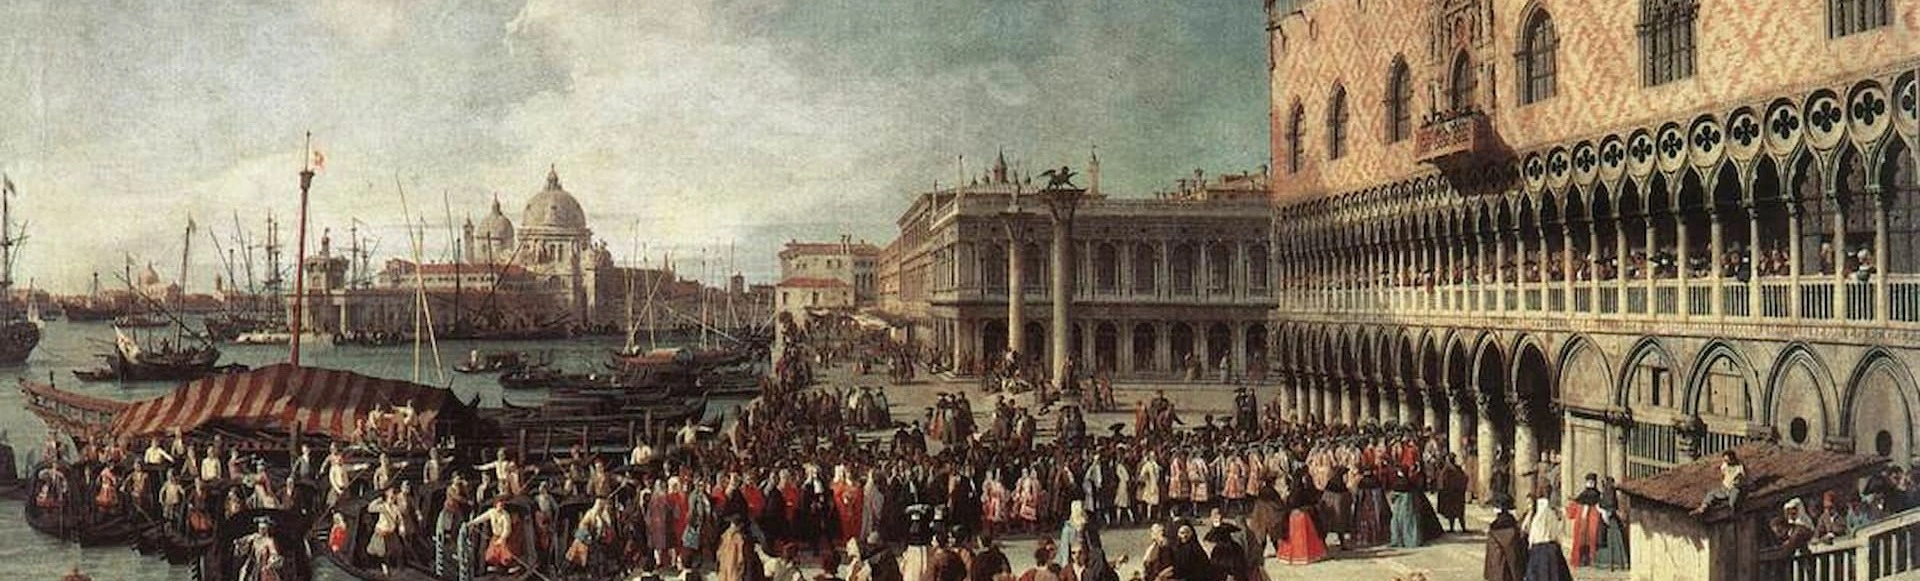 История музыкальных стилей: Вивальди и венецианская опера